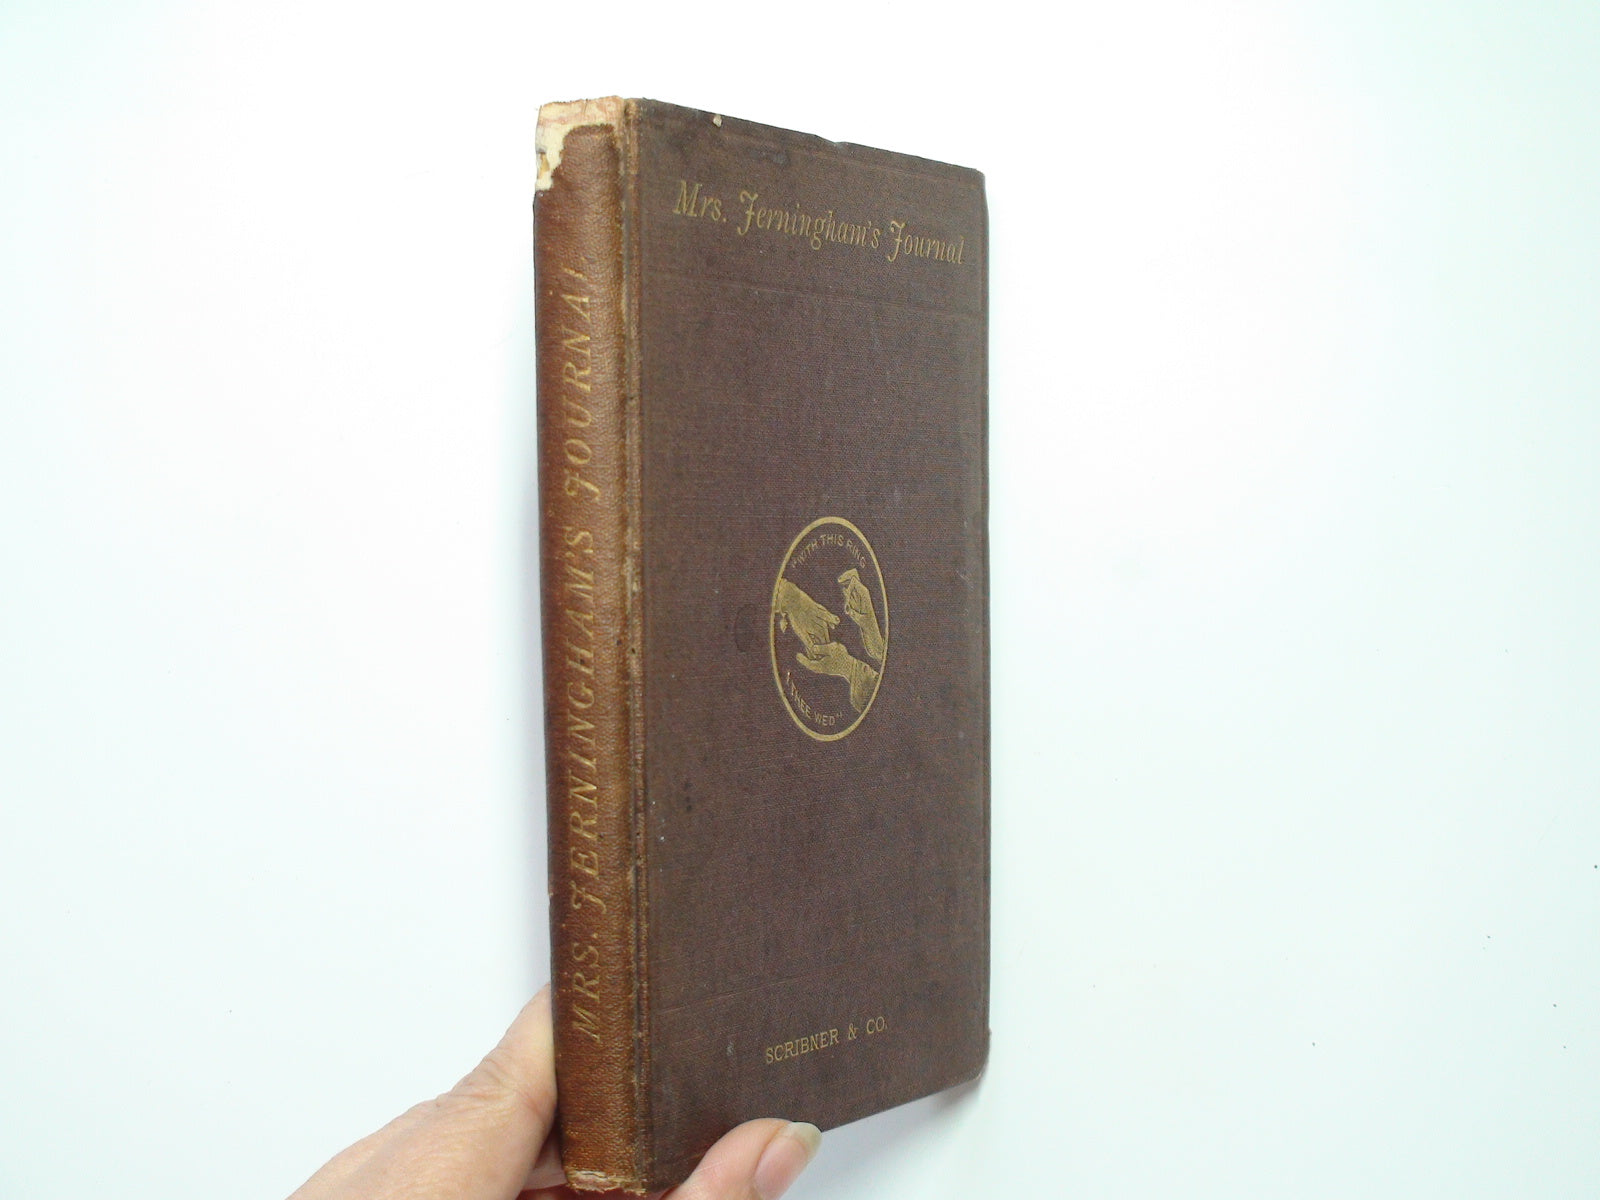 Mrs. Jerningham's Journal, 1st Ed, Scribner & Company, One Volume Only, 1870